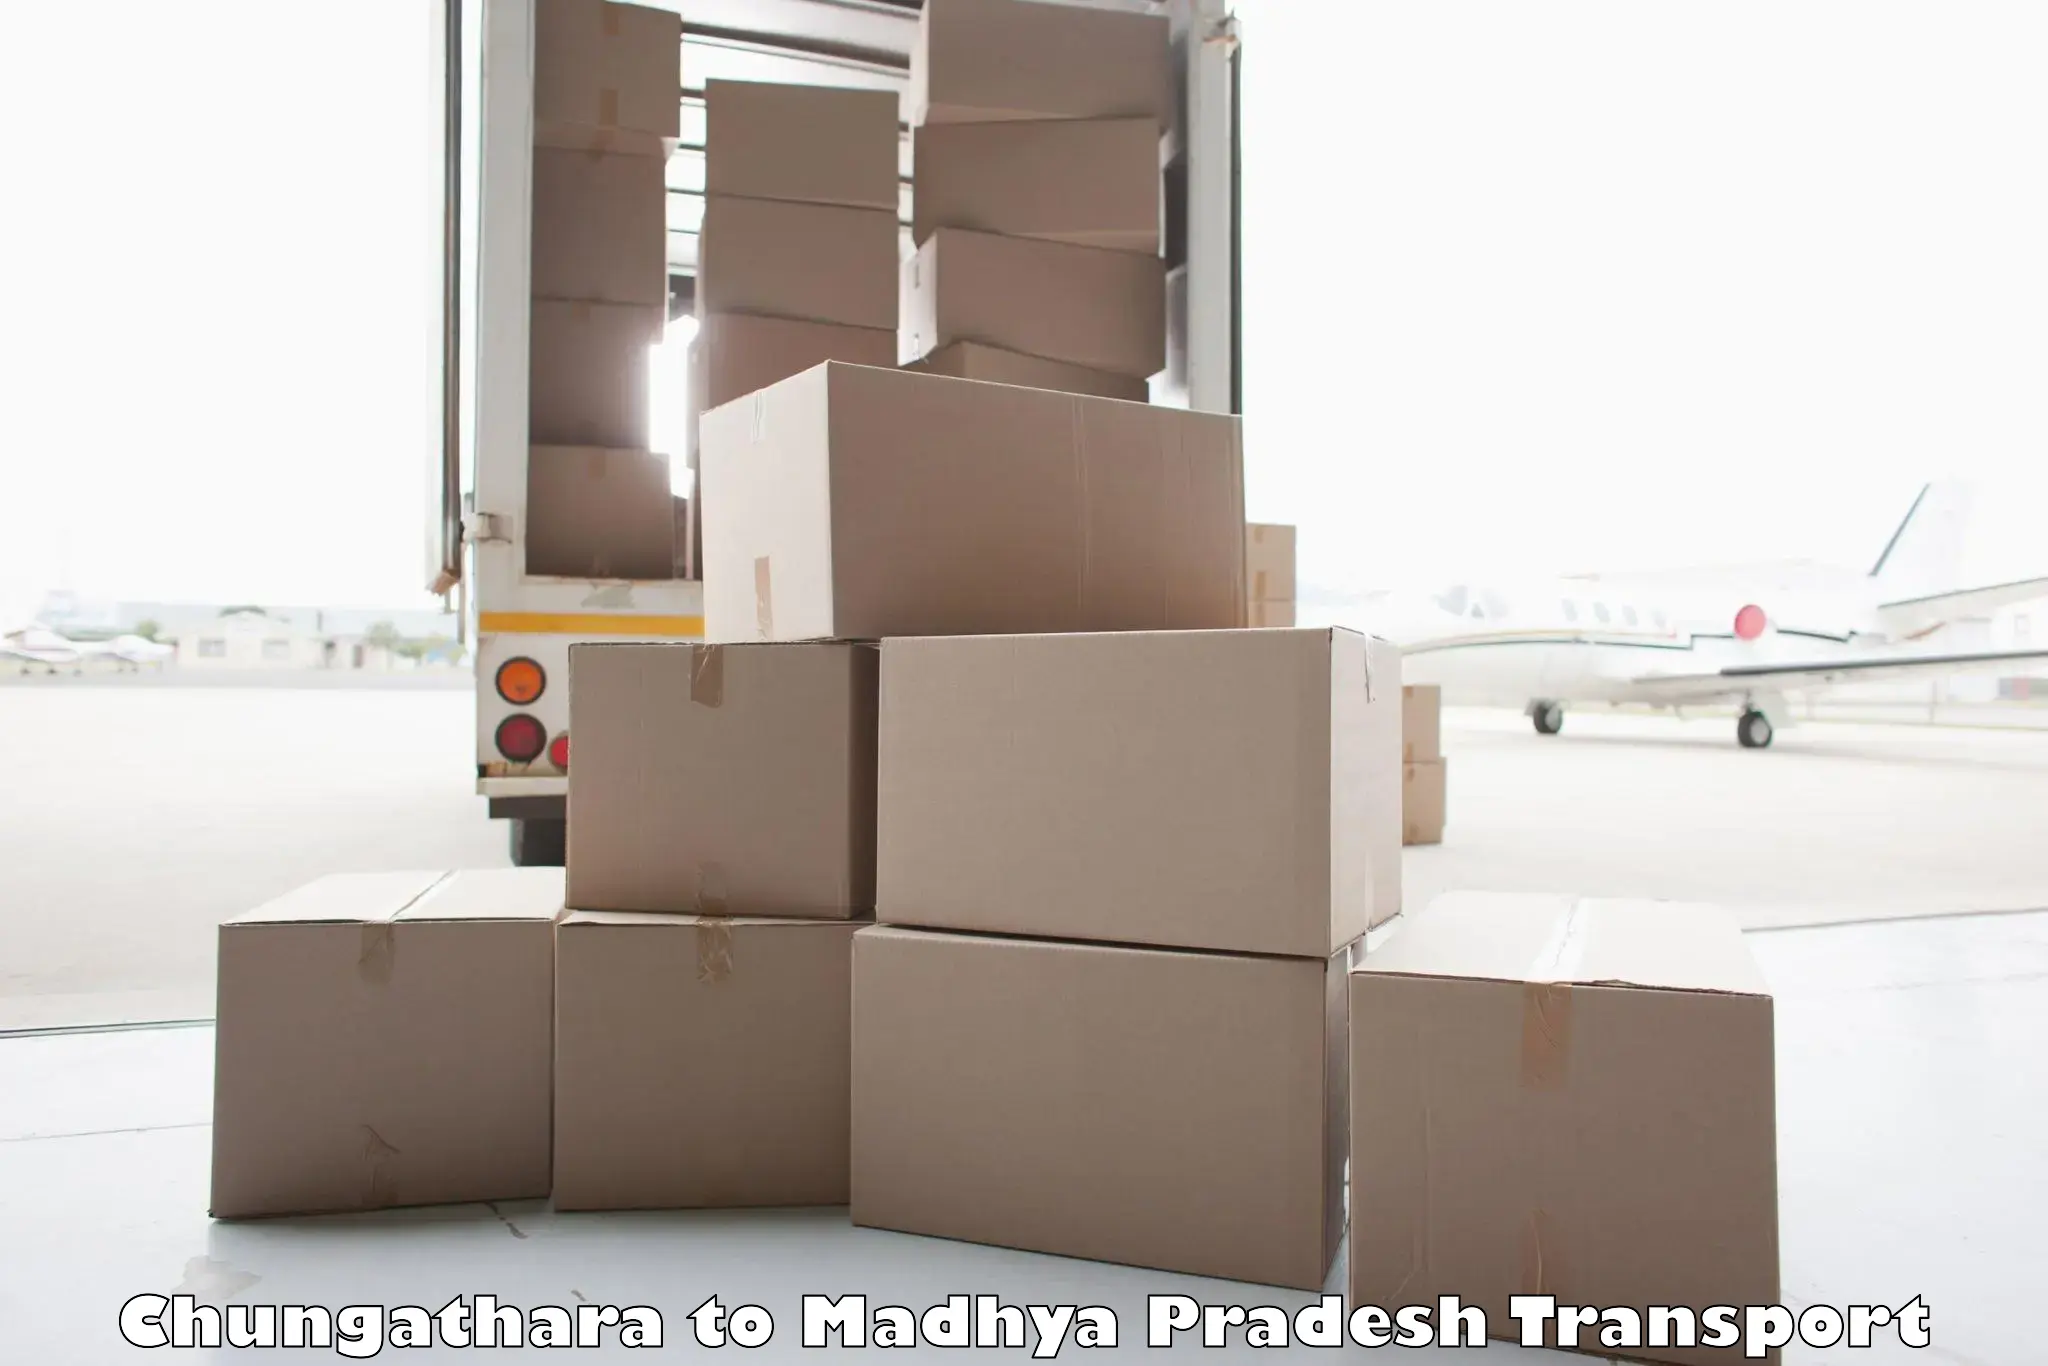 Road transport services Chungathara to Tarana Ujjain